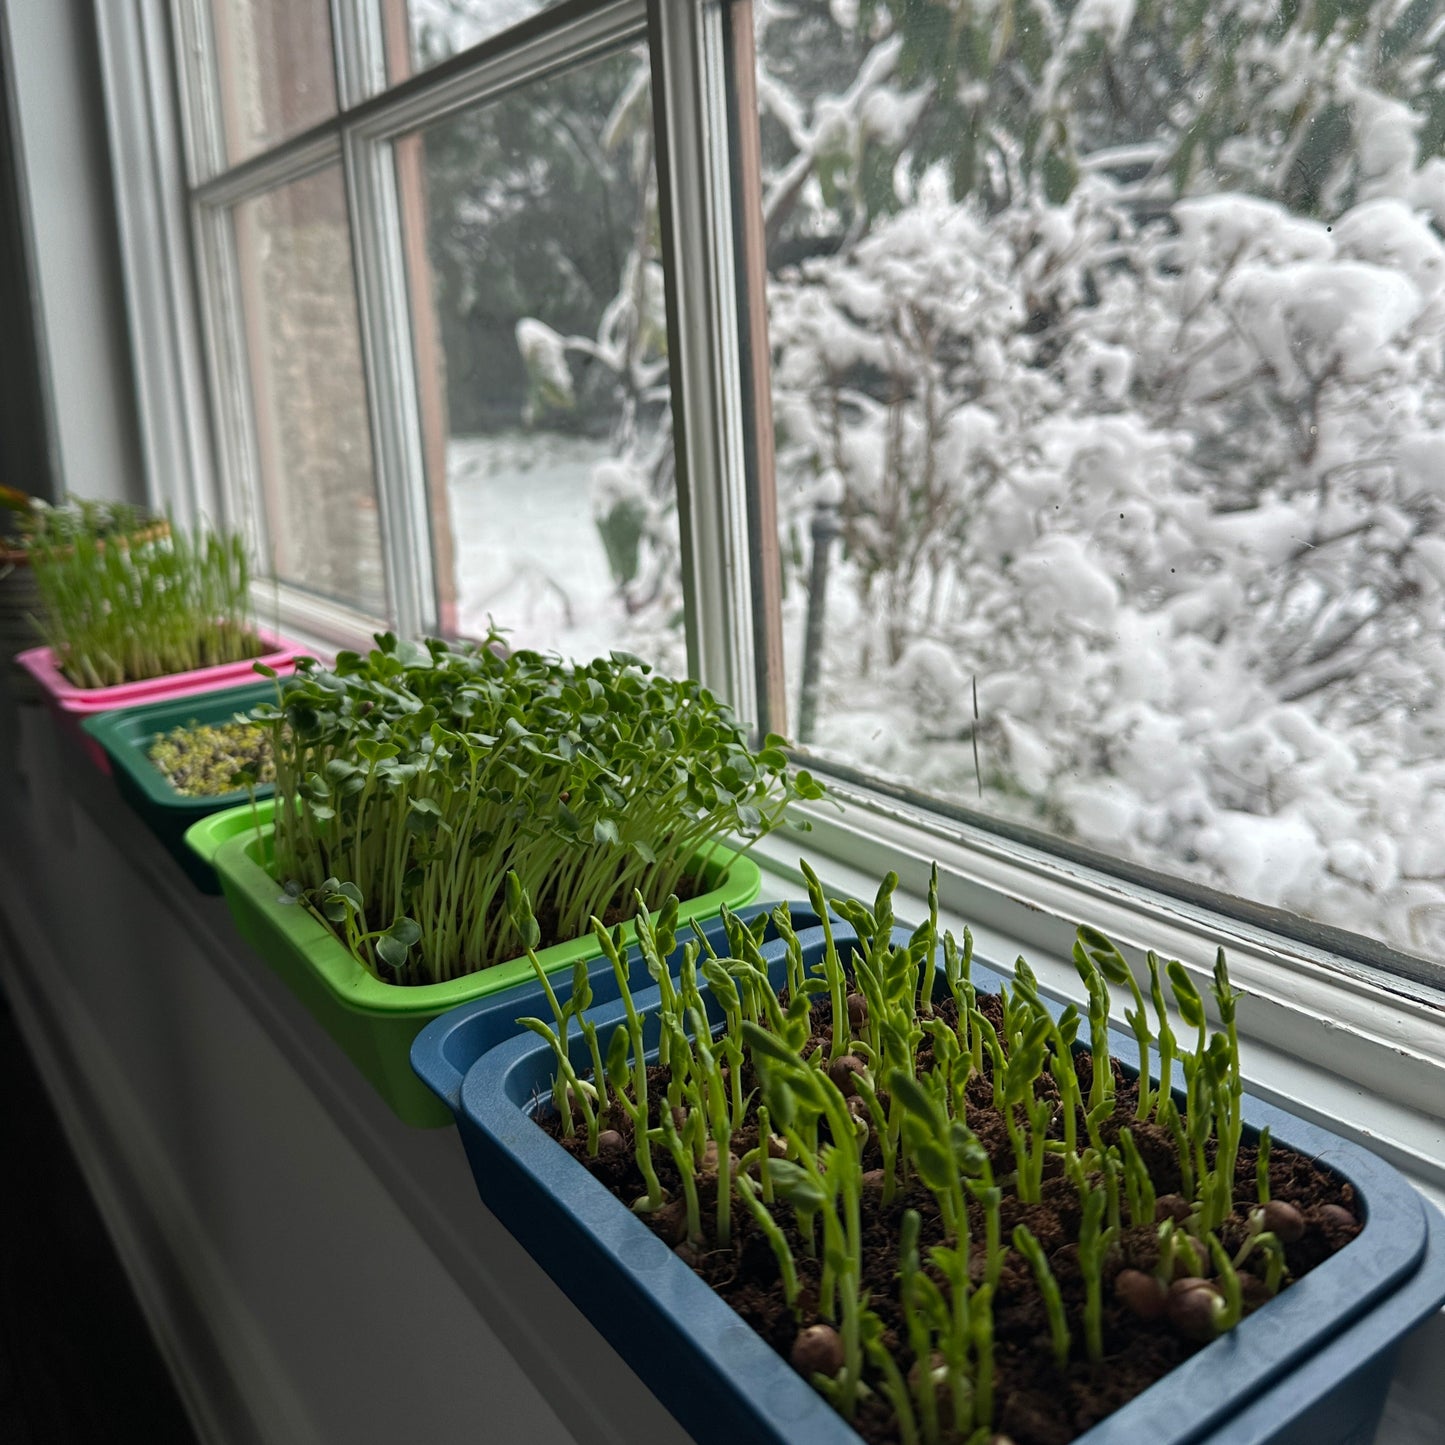 Reusable Microgreens Grow Kits